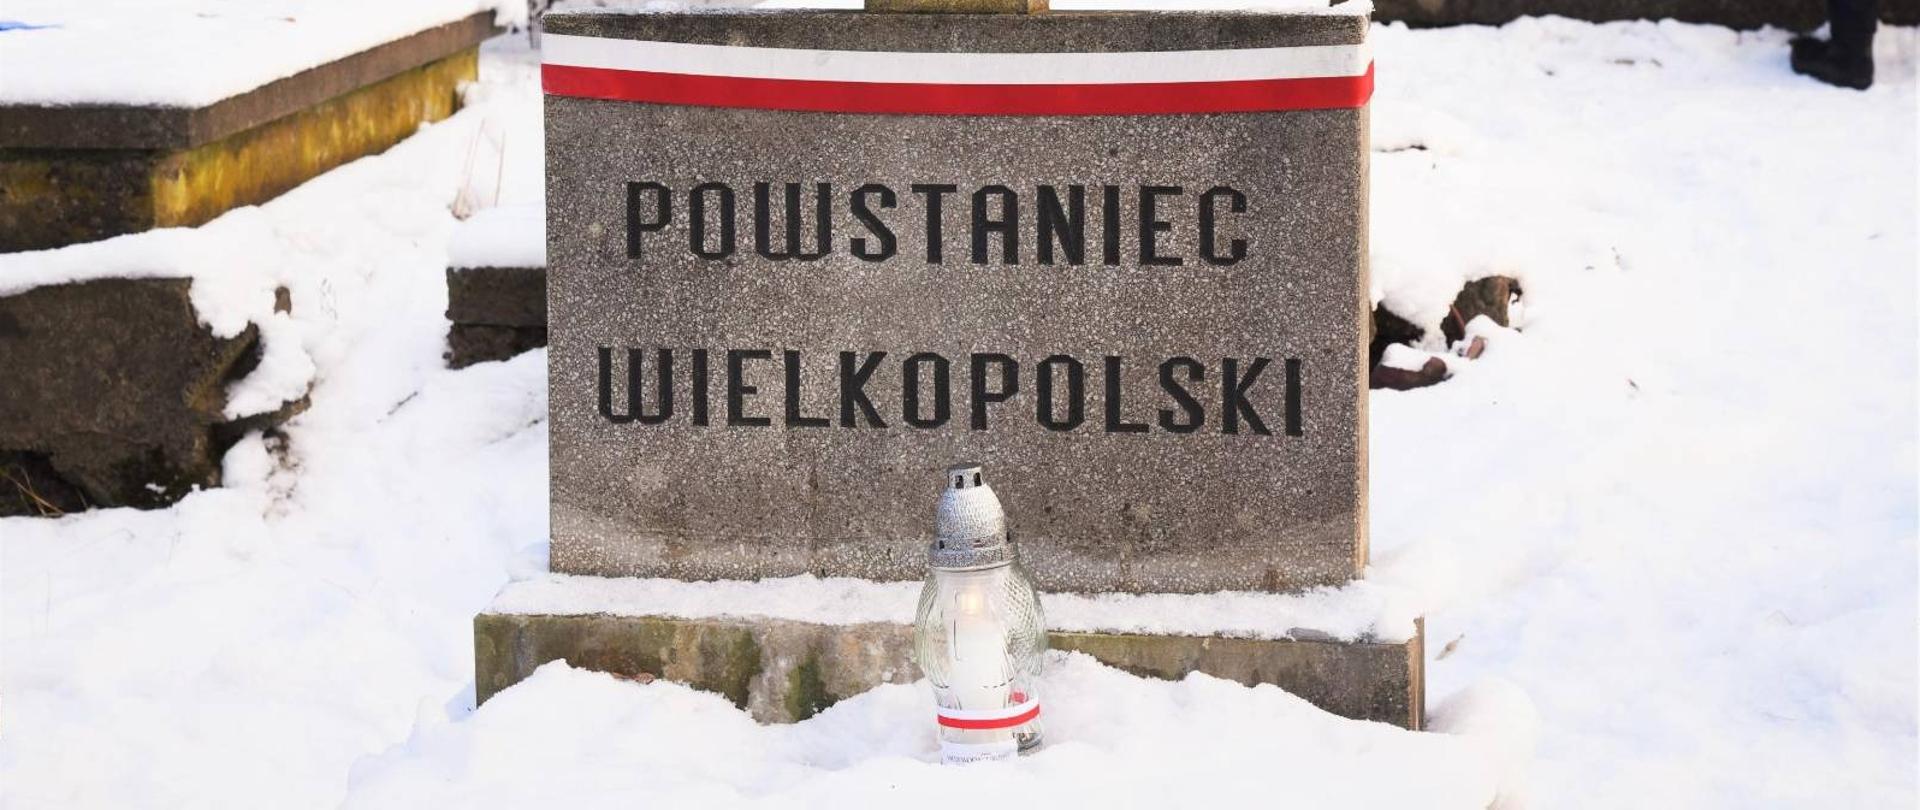 Grób z napisem "Powstaniec Wielkopolski" z biało-czerwoną wstążką i zapalonym zniczem 